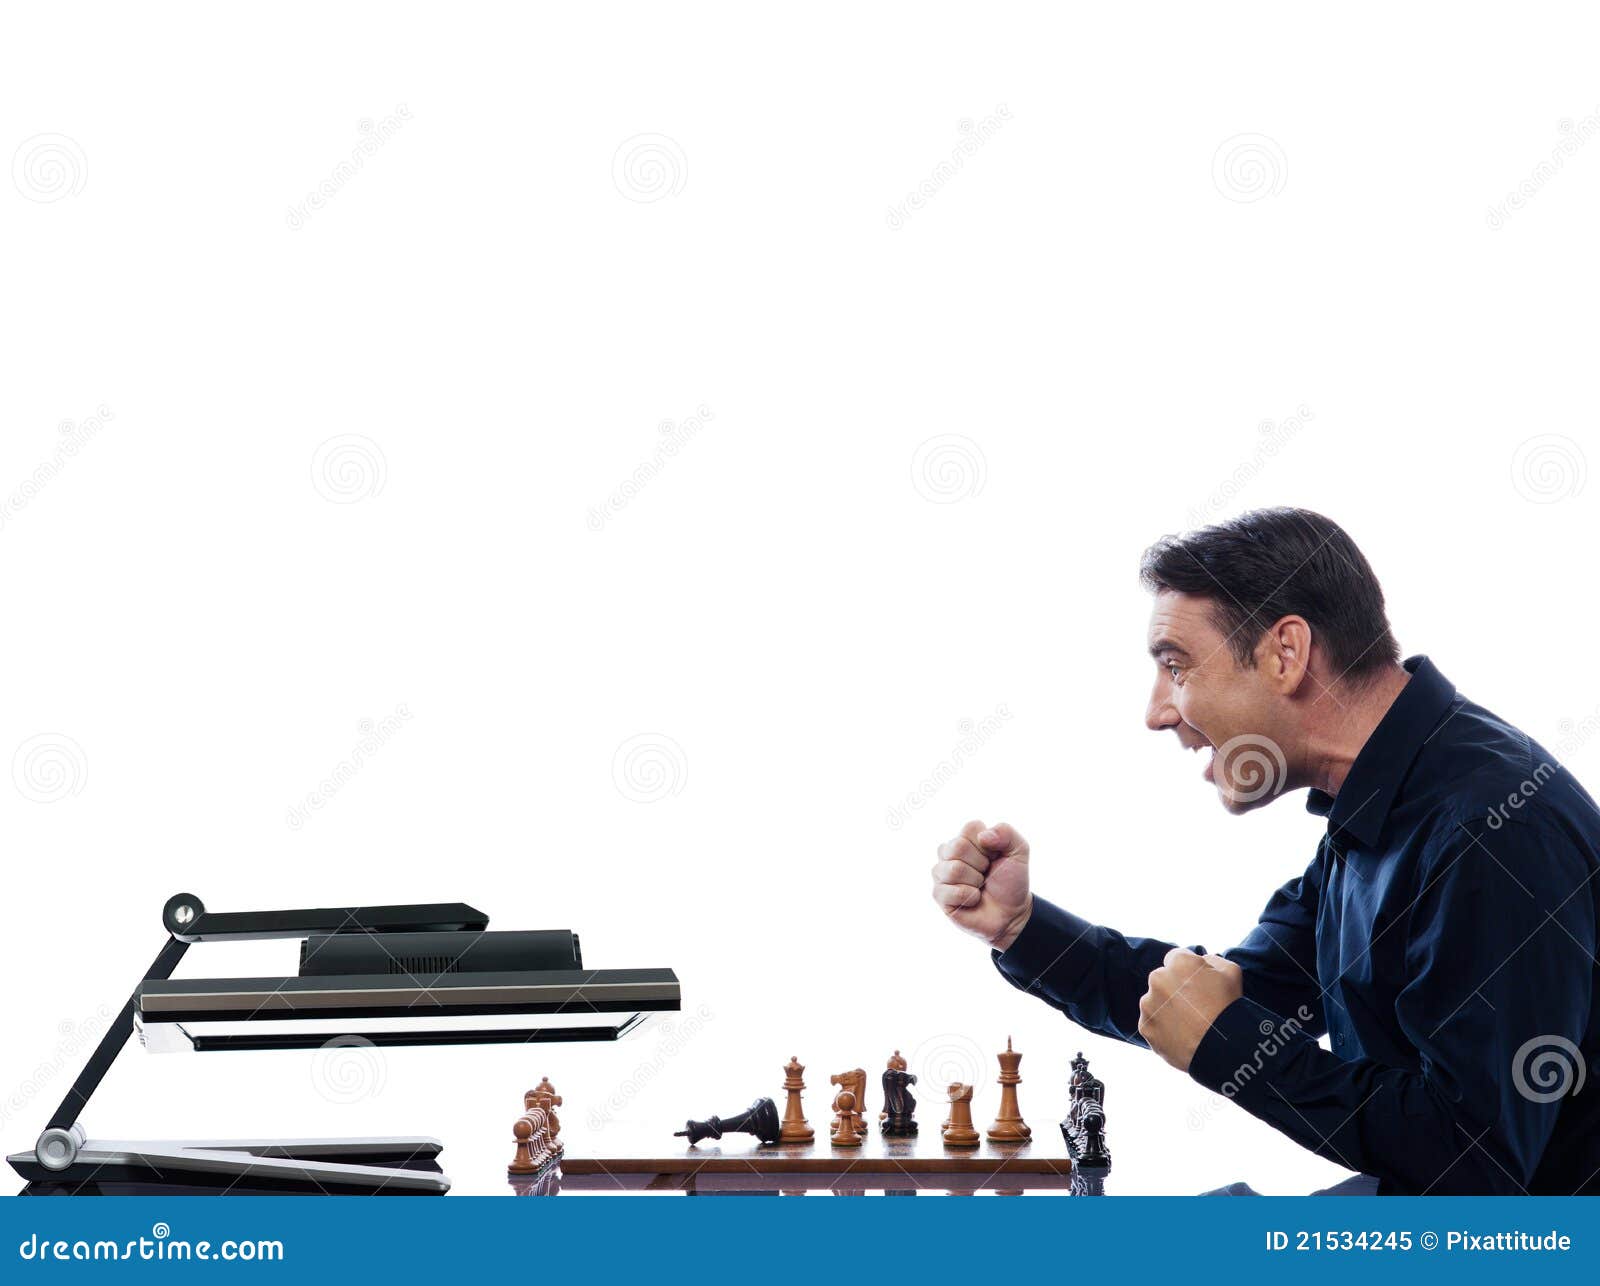 Jugar al ajedrez contra el ordenador, Ajedrez contra ordenador